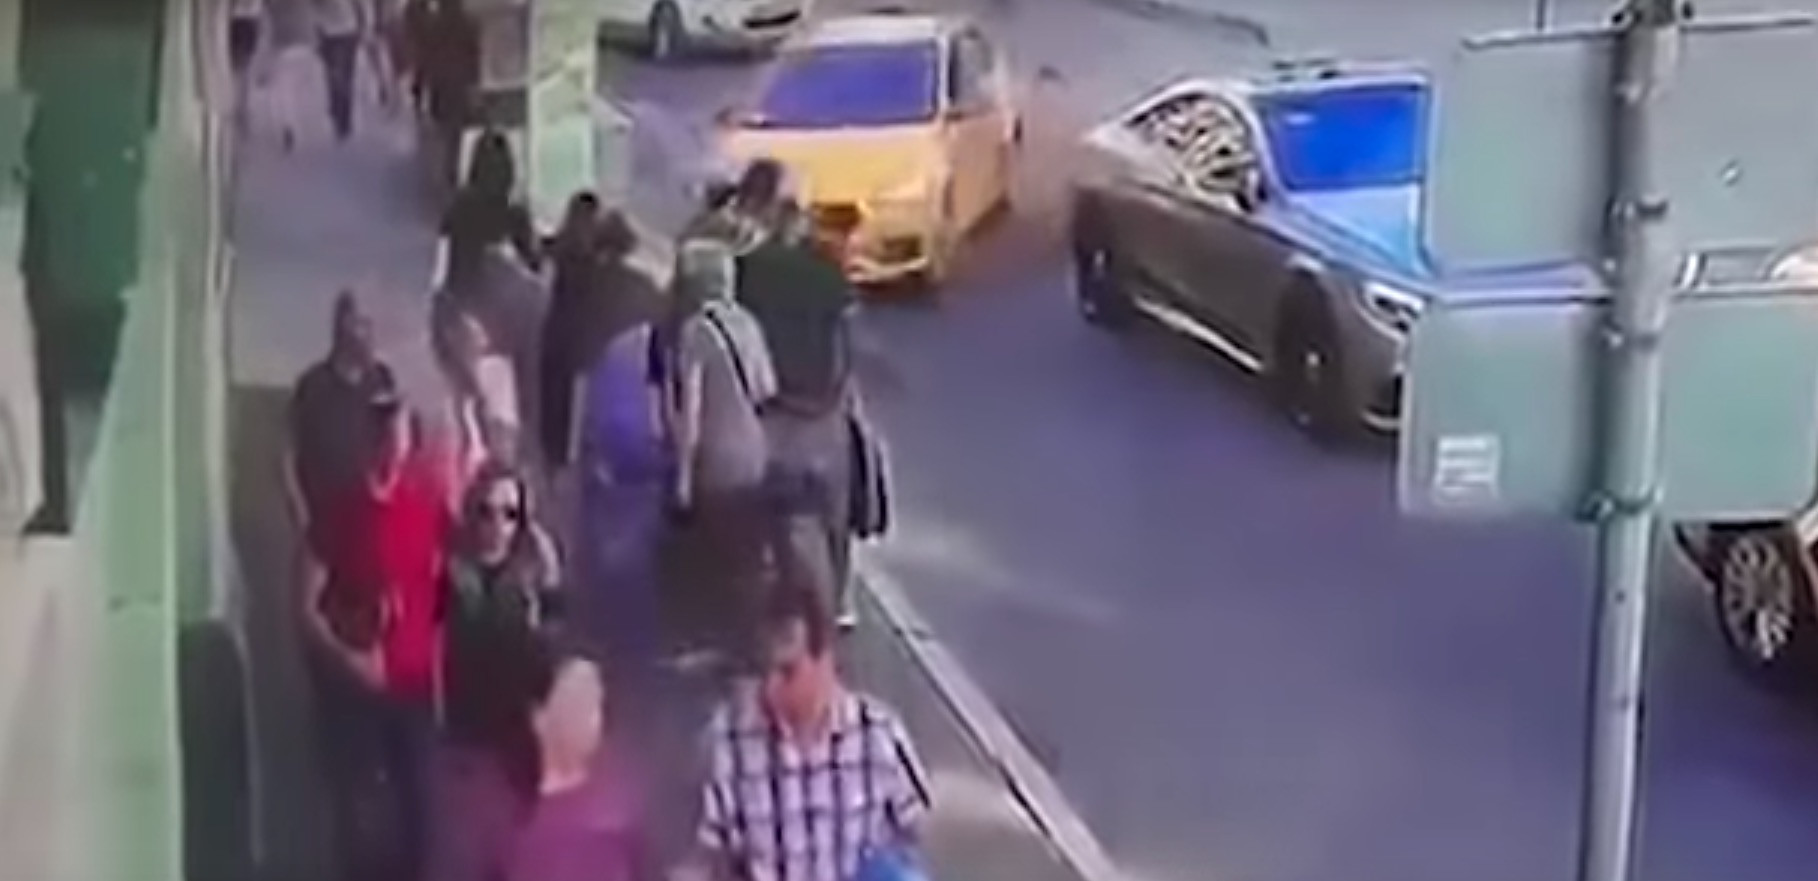 ‘Αϋπνος και φοβισμένος δηλώνει ο ταξιτζής που έπεσε σε πεζούς στην Μόσχα [Βίντεο]